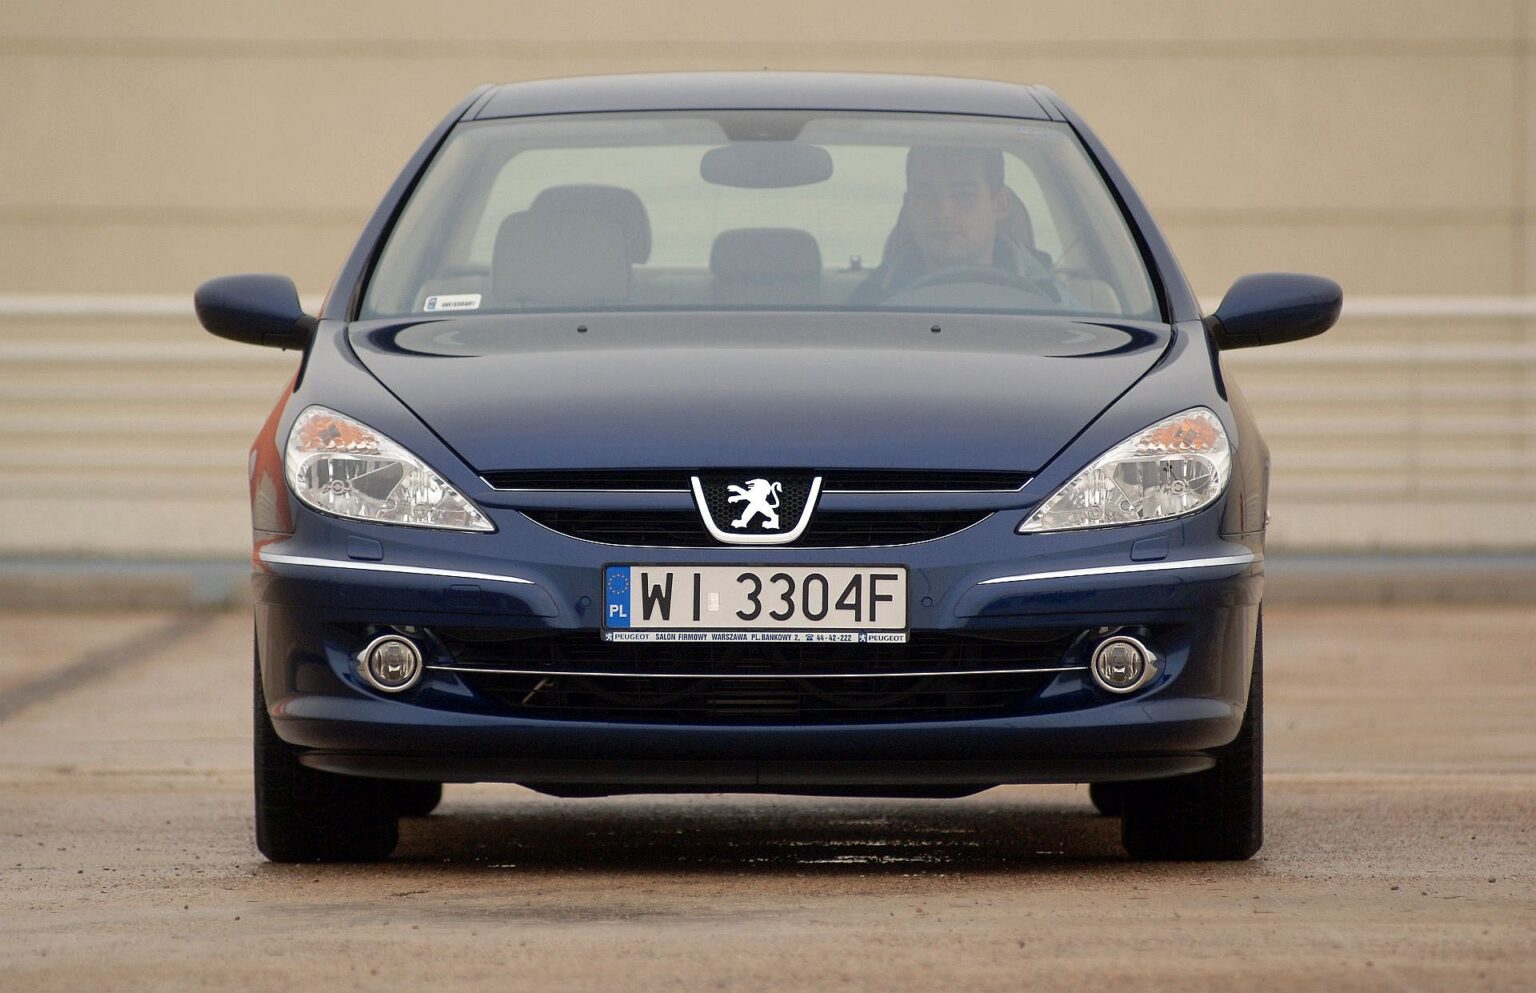 Używany Peugeot 607 (20002010) opinie, dane techniczne